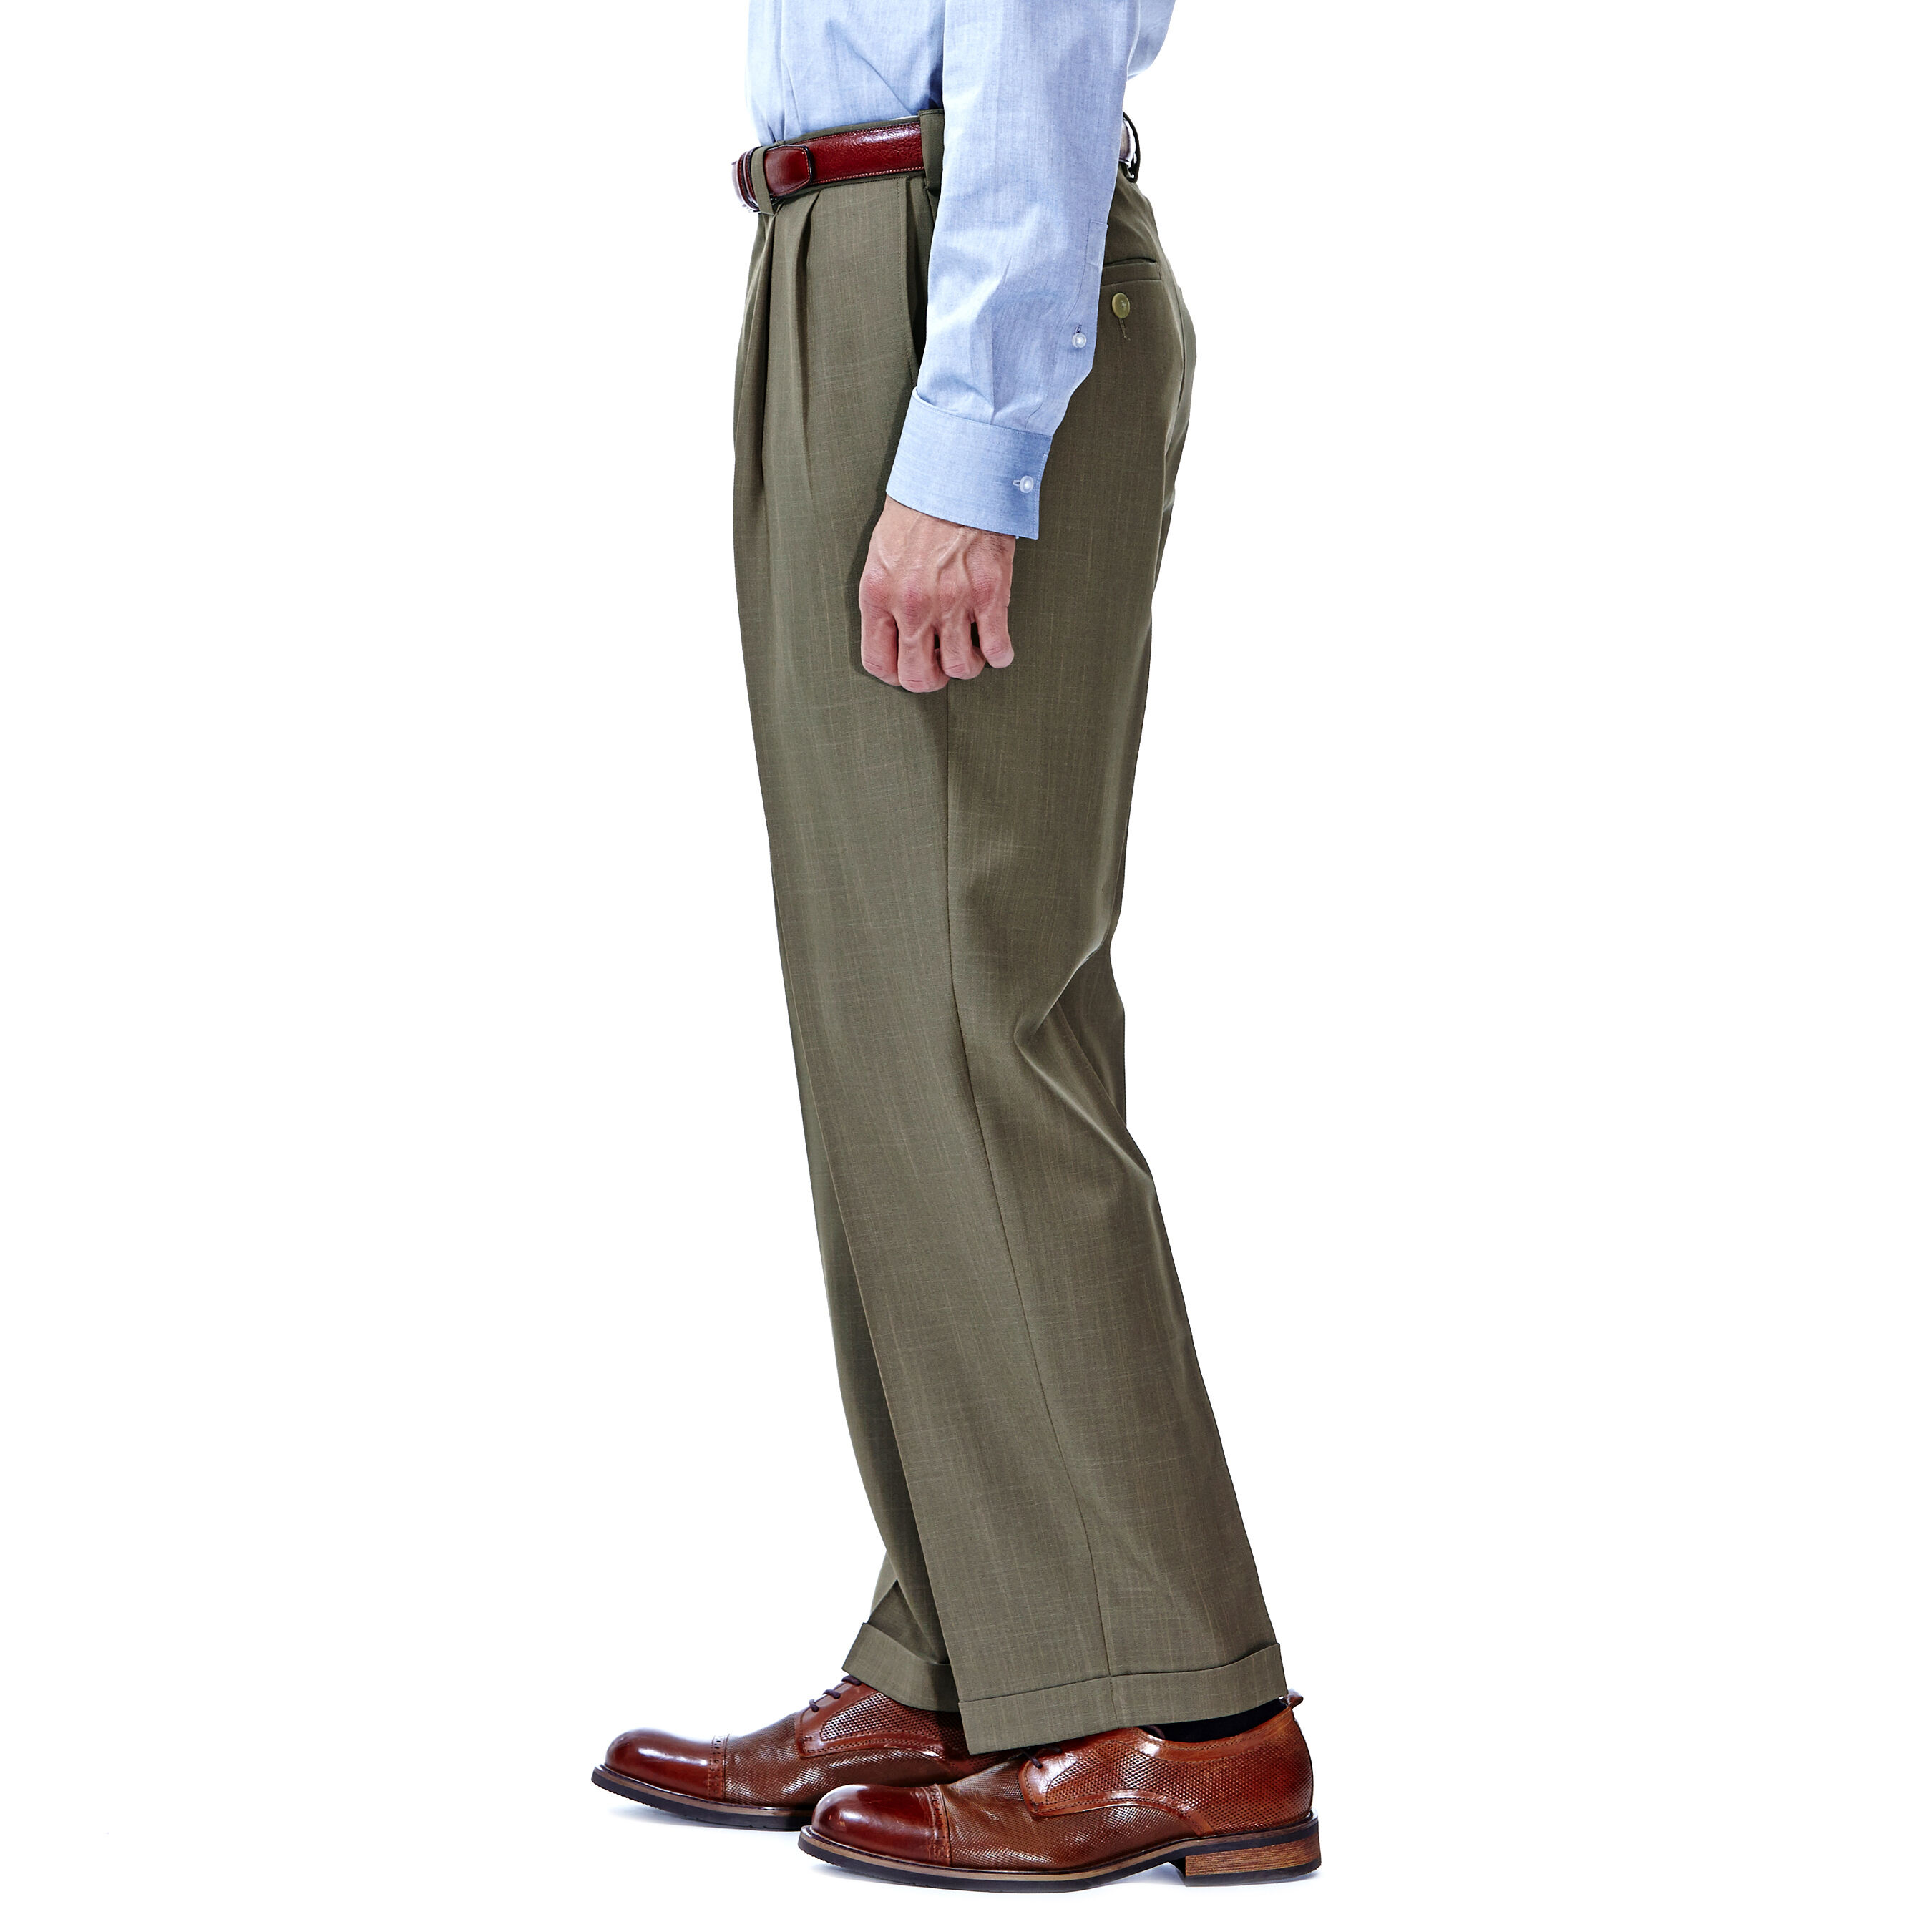 Men's Pants: Shop Men's Sweatpants, Cargo & Chino Styles | Levi's® US